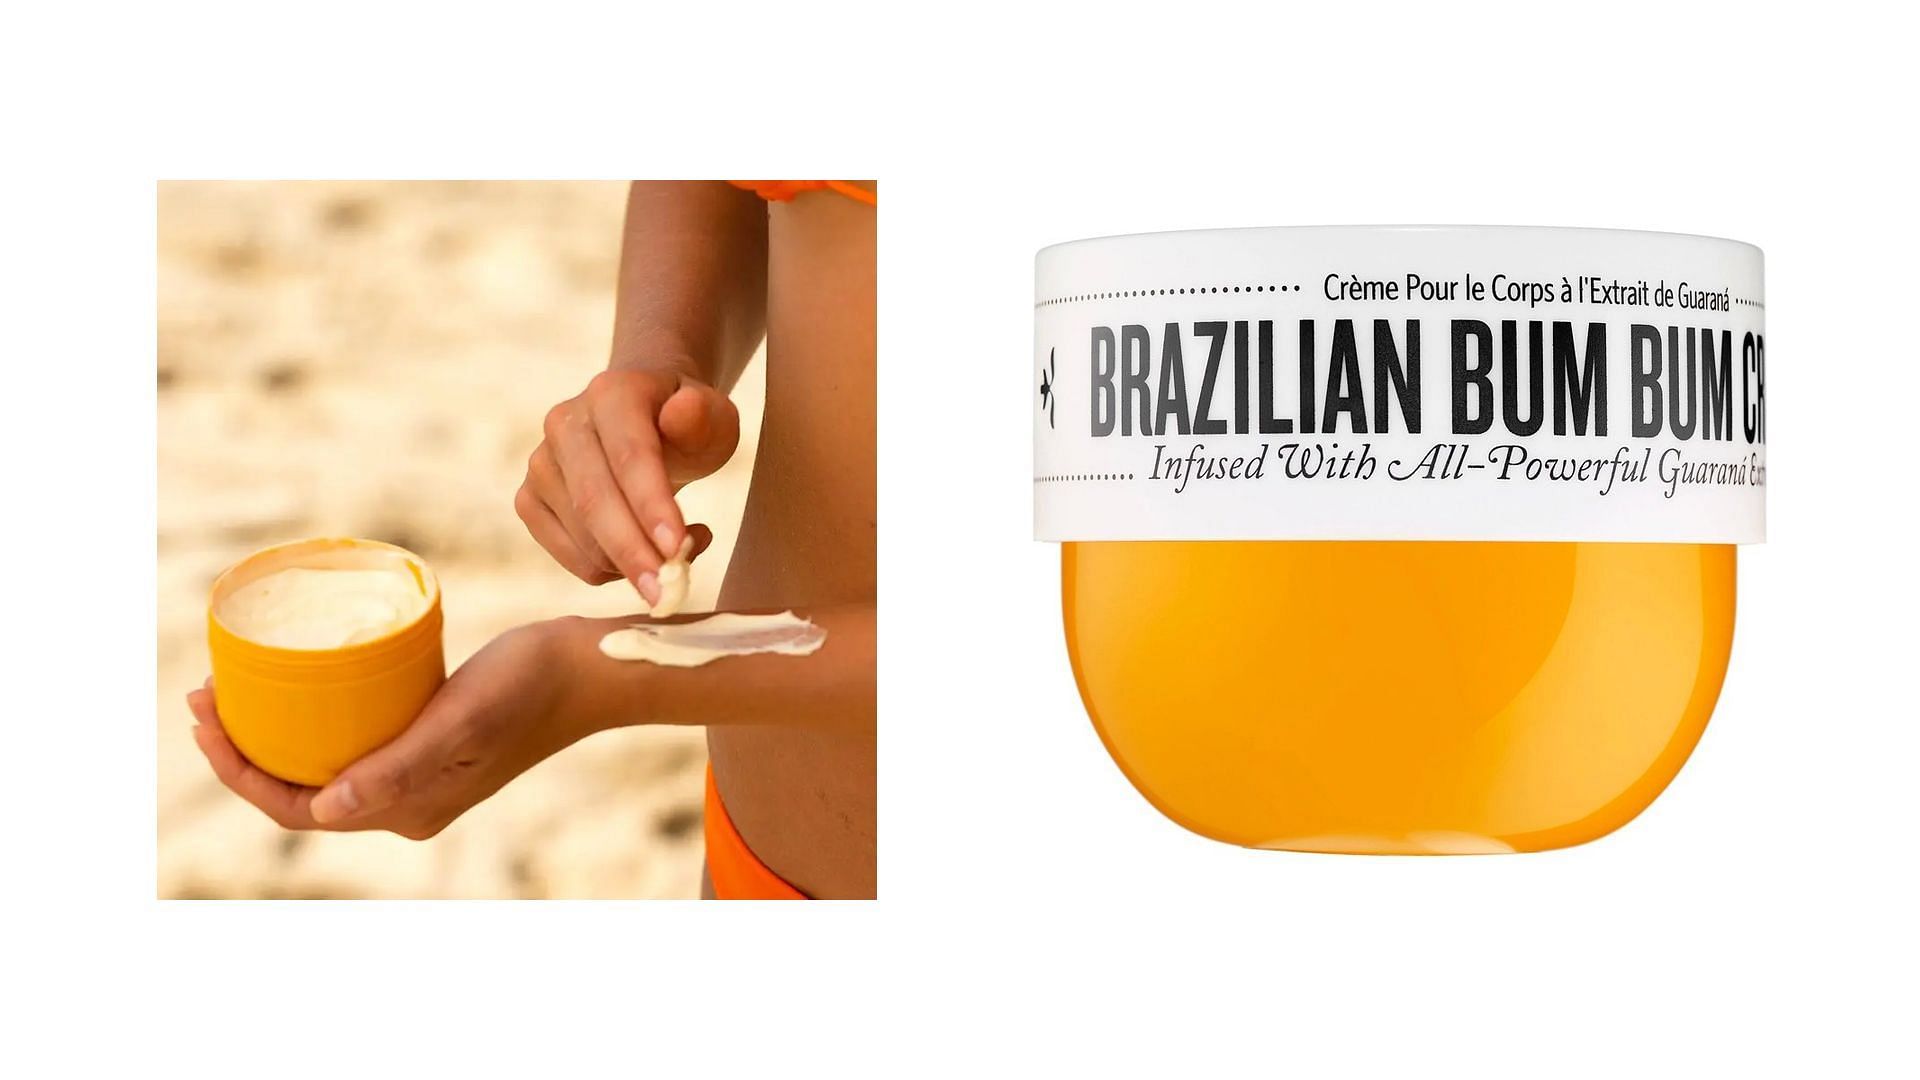 Sol de Janeiro Brazilian Bum Bum Cream - Where to get, price, and more  details explored